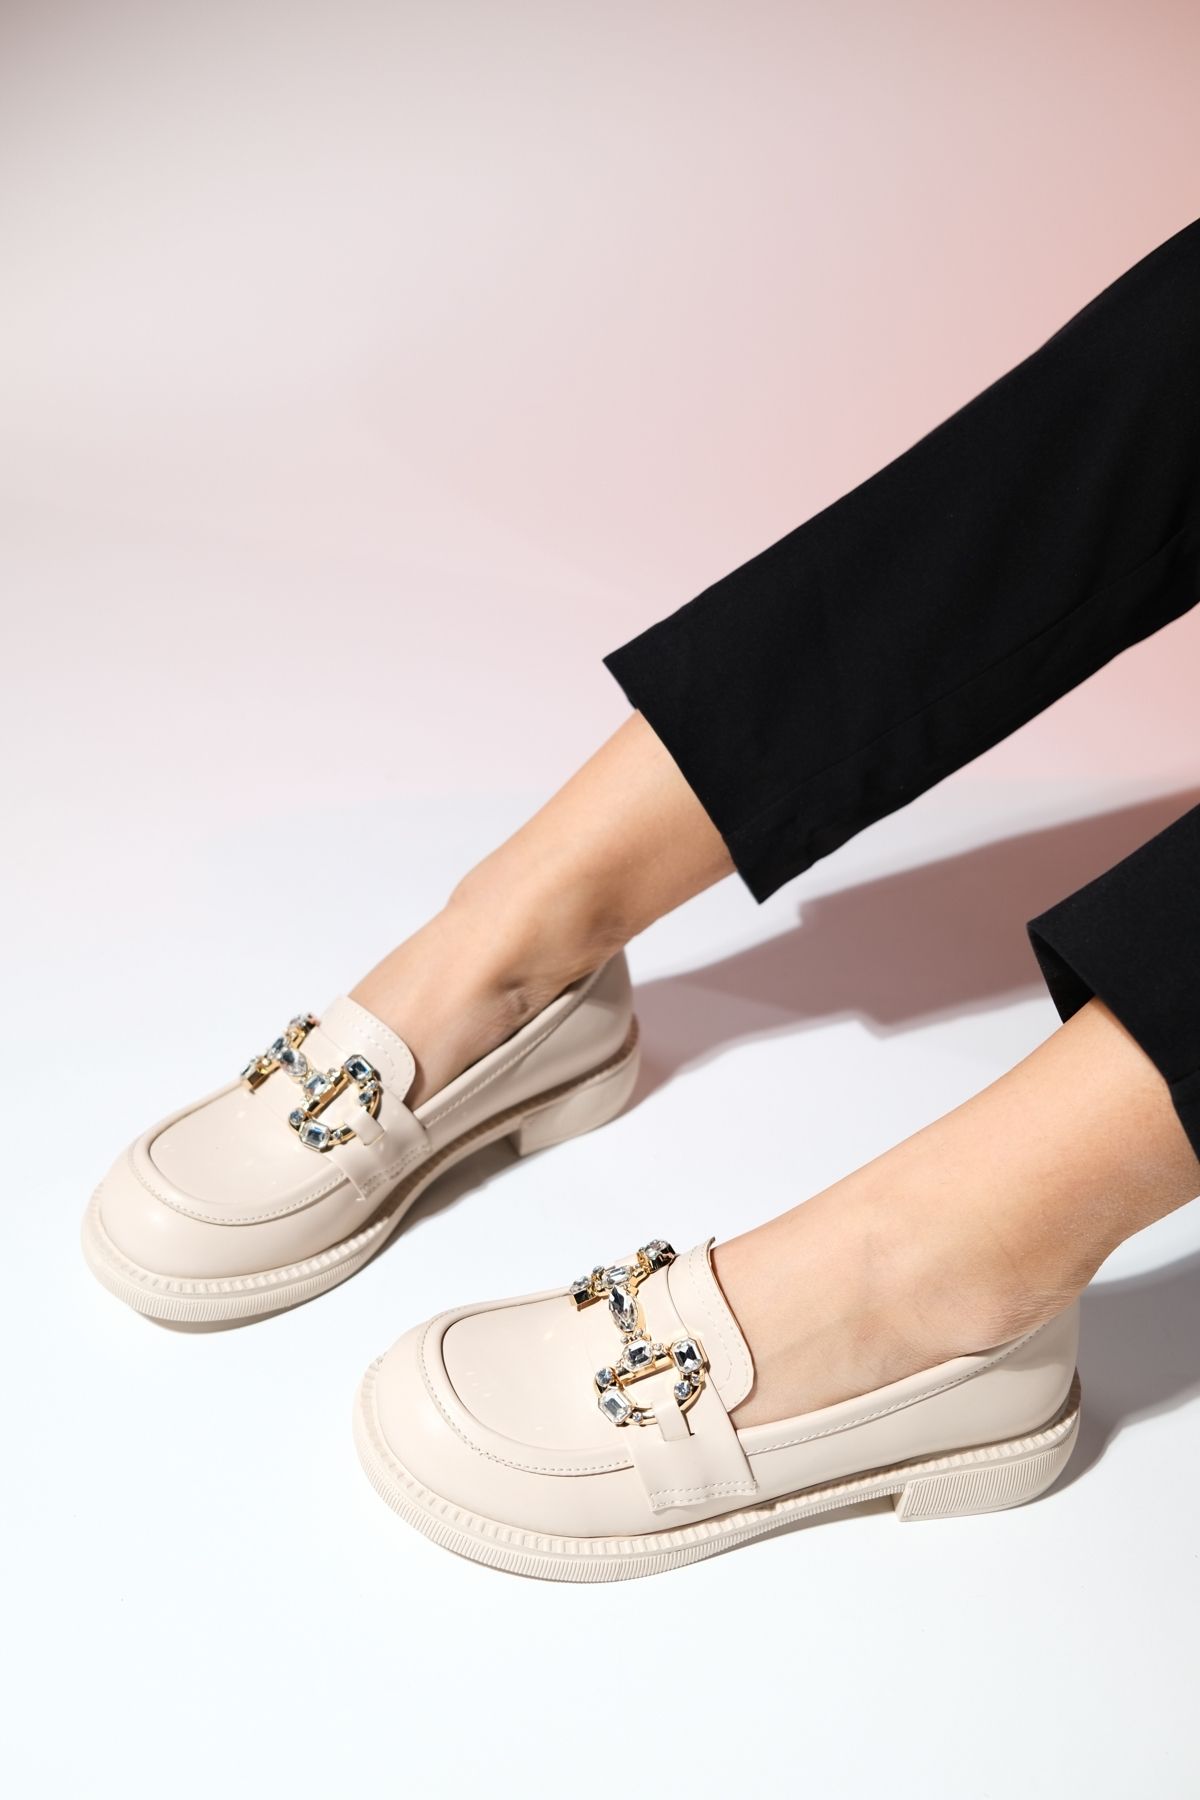 luvishoes NORMAN Krem Cilt Taş Tokalı Kadın Loafer Ayakkabı